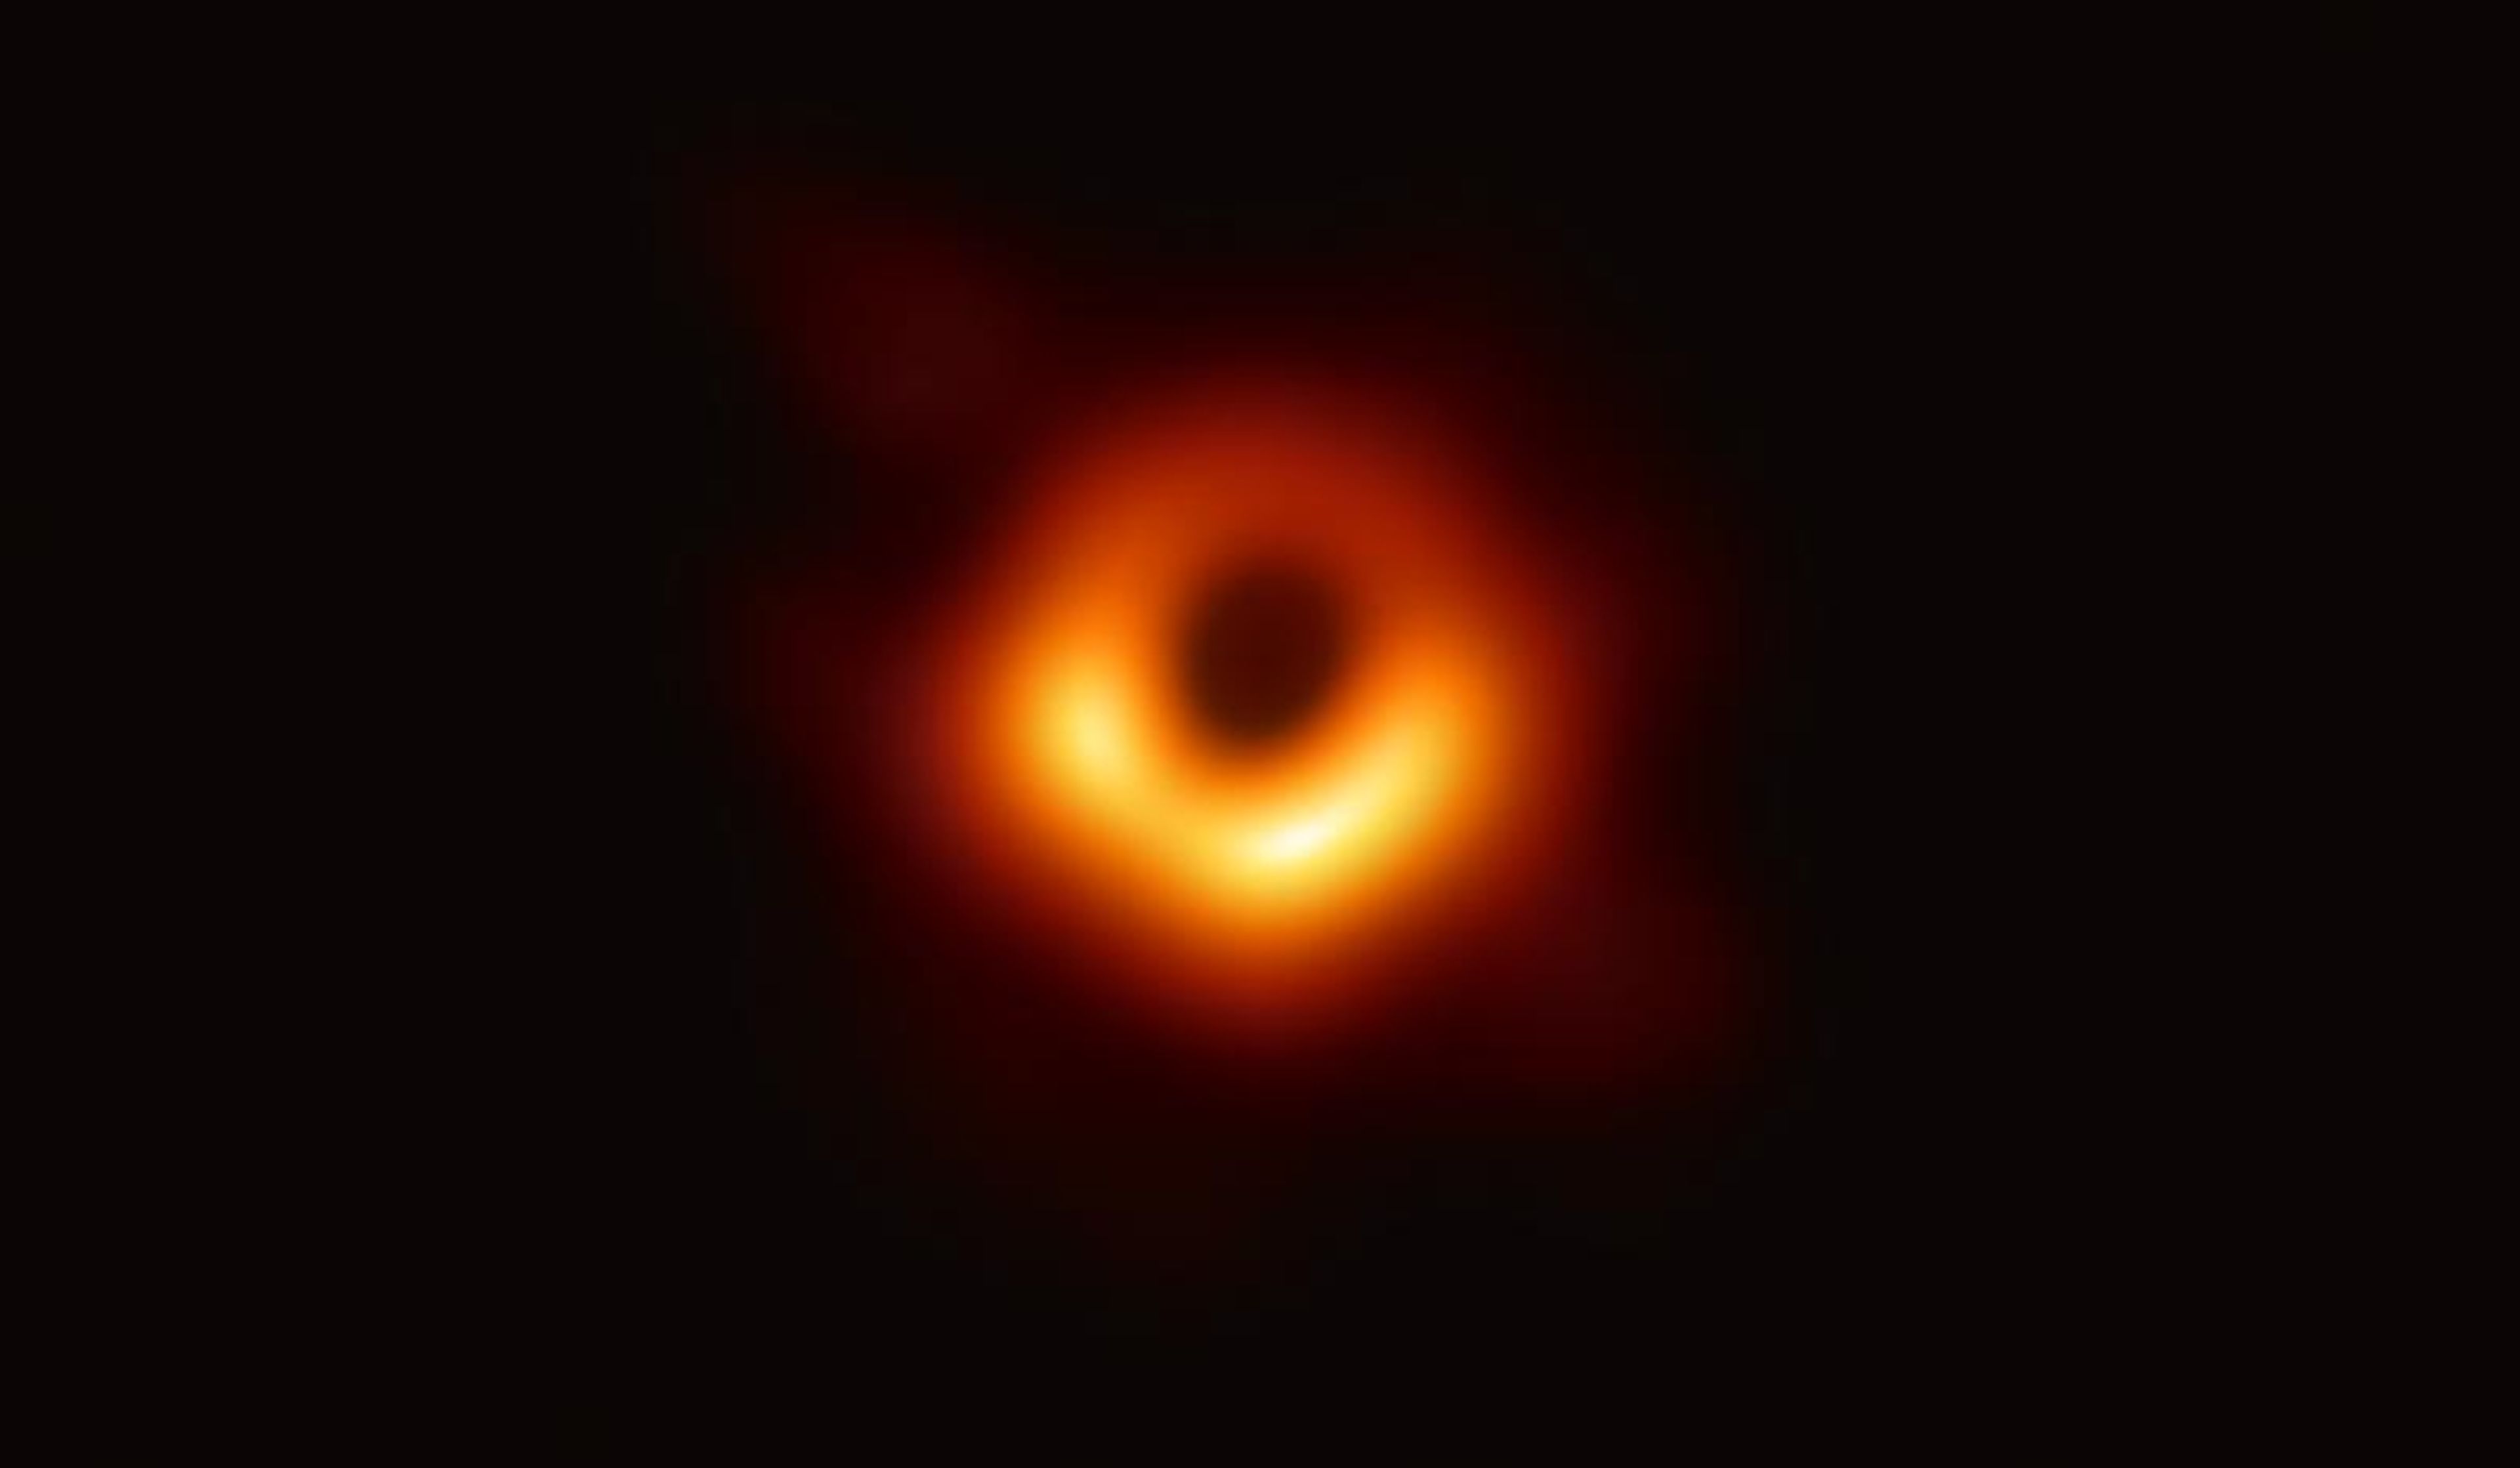 Los científicos han obtenido la primera imagen de un agujero negro, usando observaciones del Telescopio Event Horizon Horizon del centro de la galaxia M87.